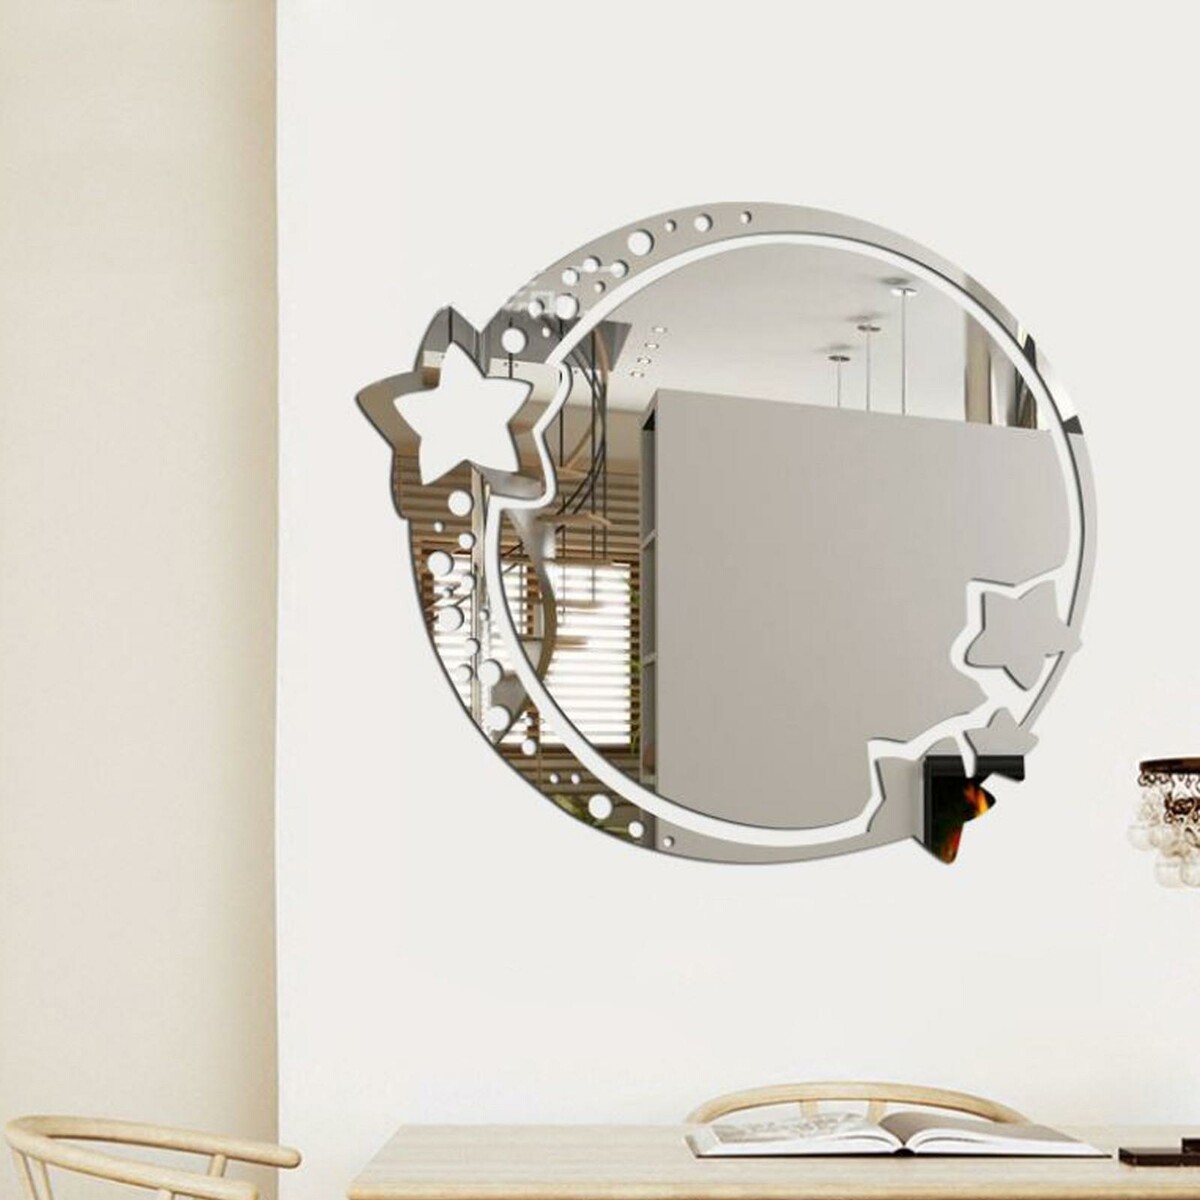 Зеркало настенное, наклейки интерьерные, зеркальные, декор на стену, панно 22 х 19 см кармашек на стену с зеркалом